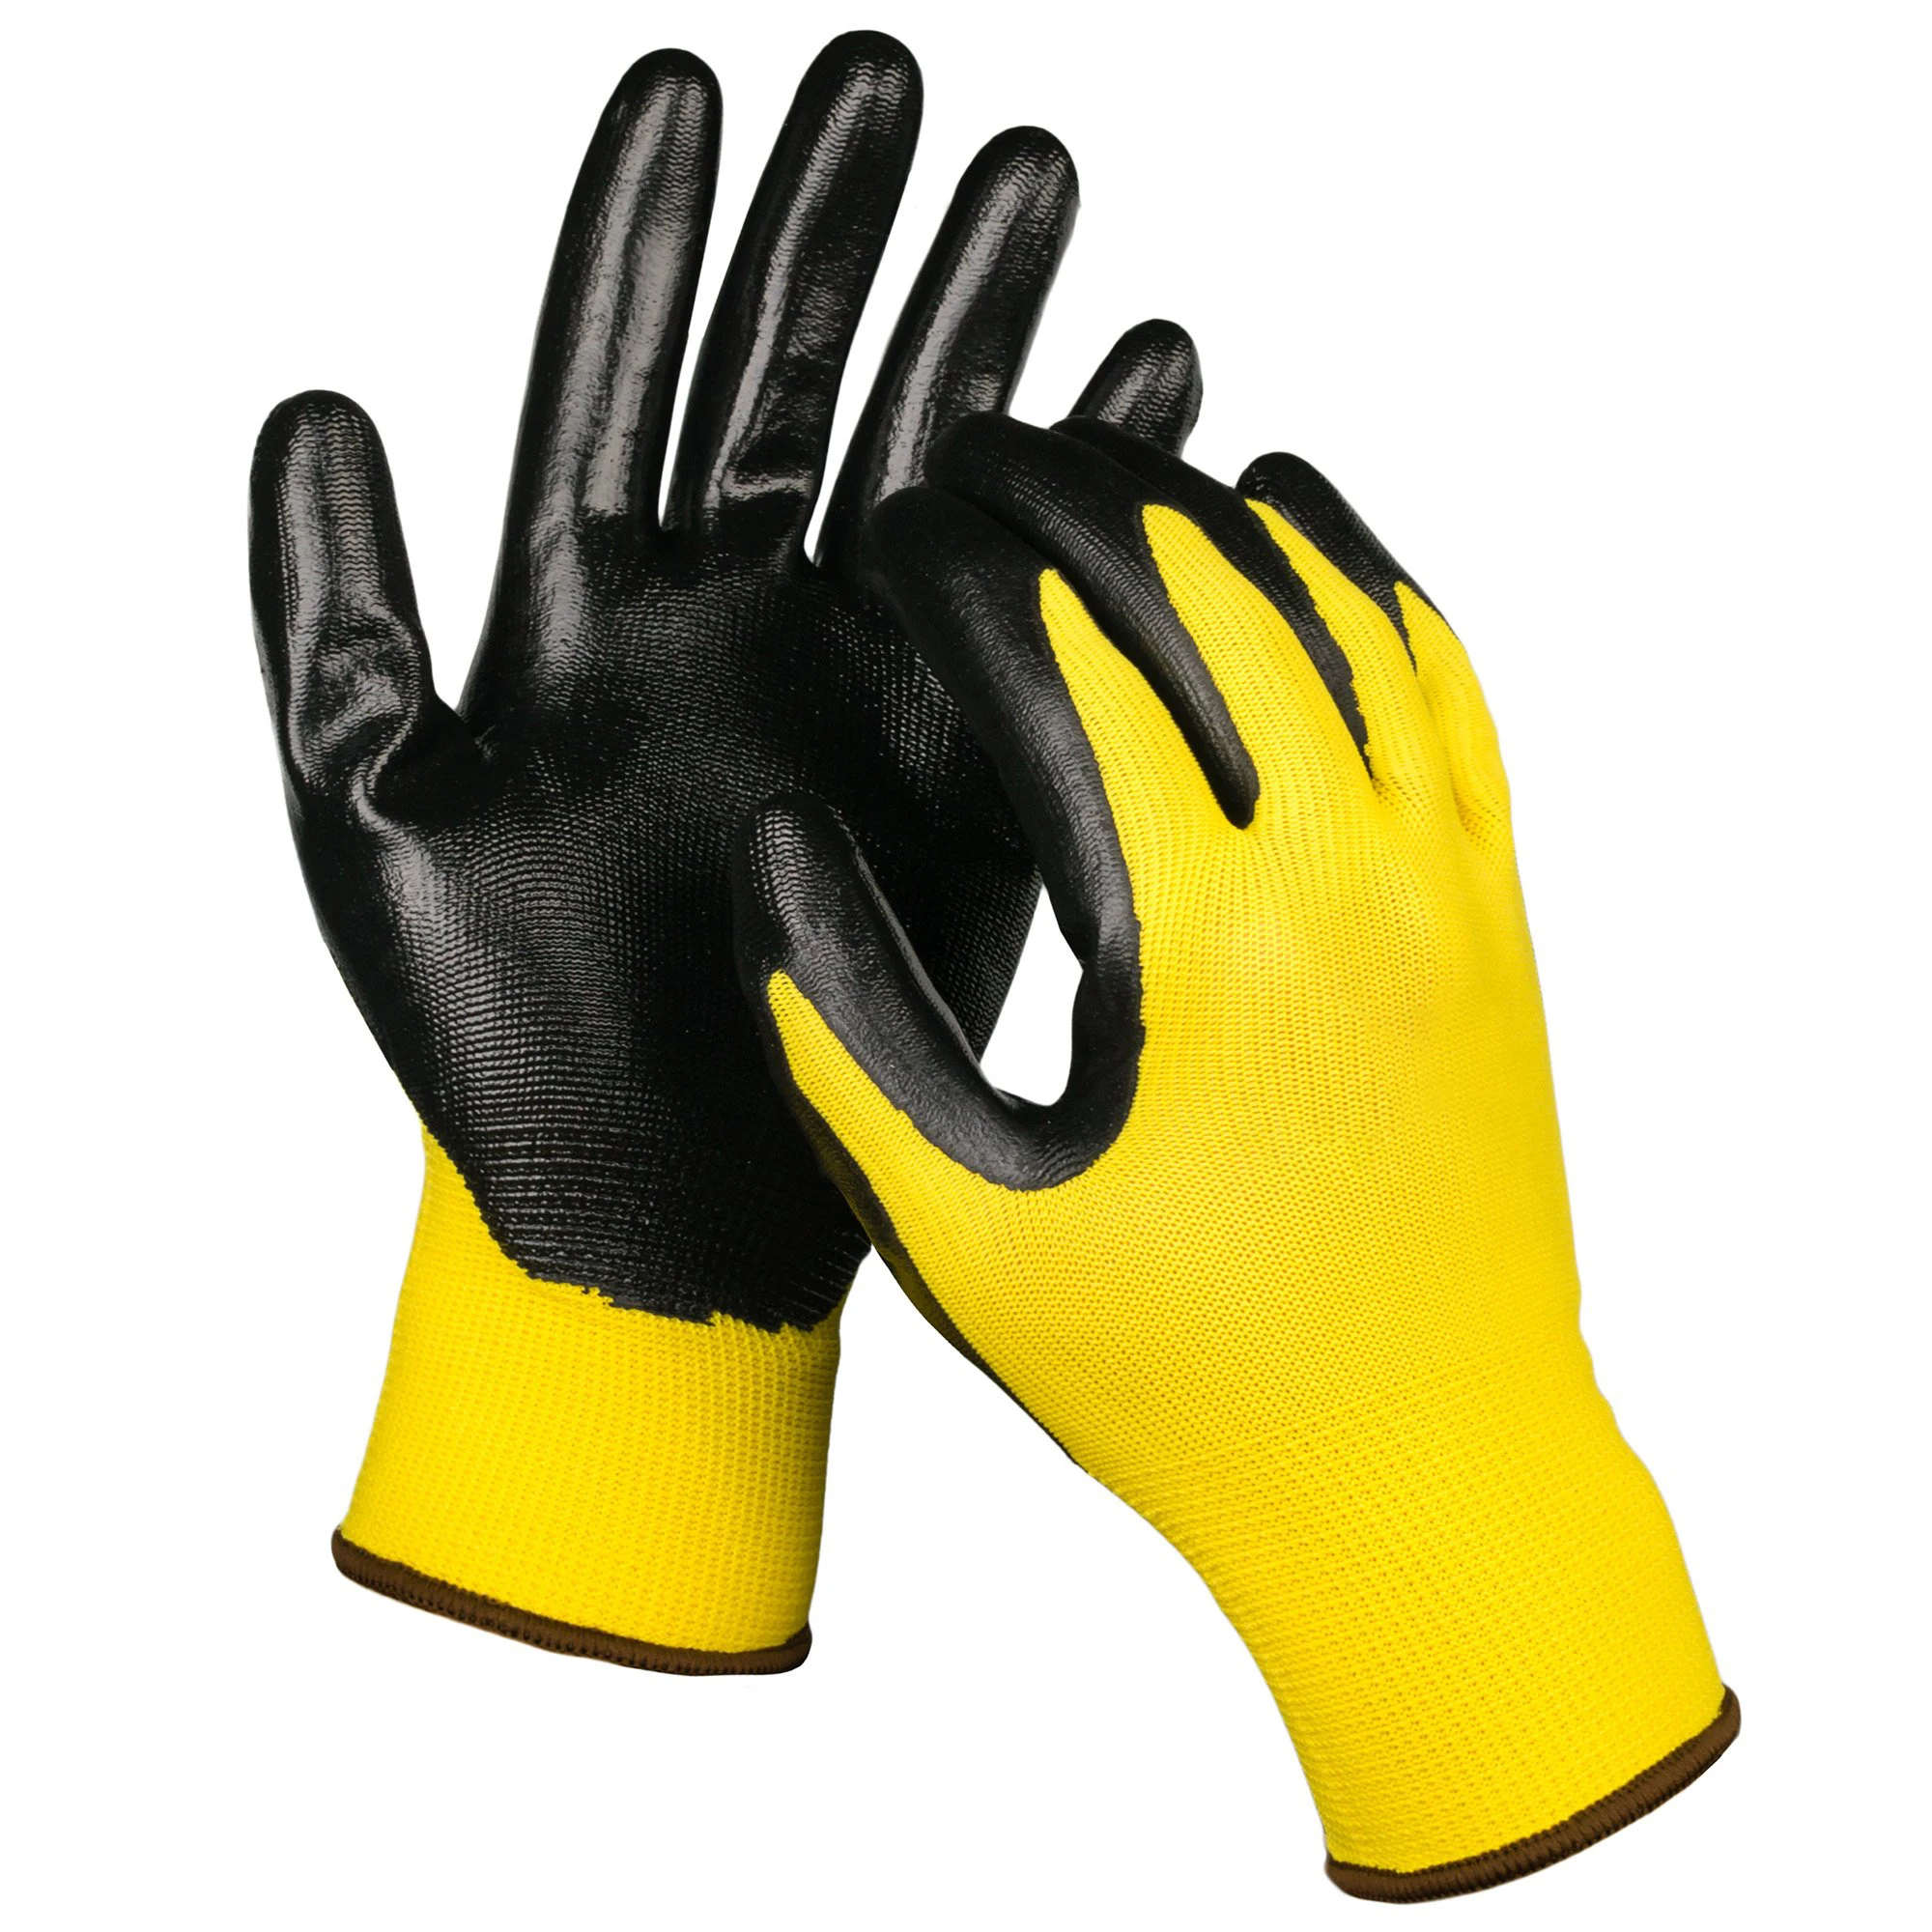 Safety Nitril Gloves. Перчатки восточные тигры g160 с полосами из нитрила. Перчатки 12 лет